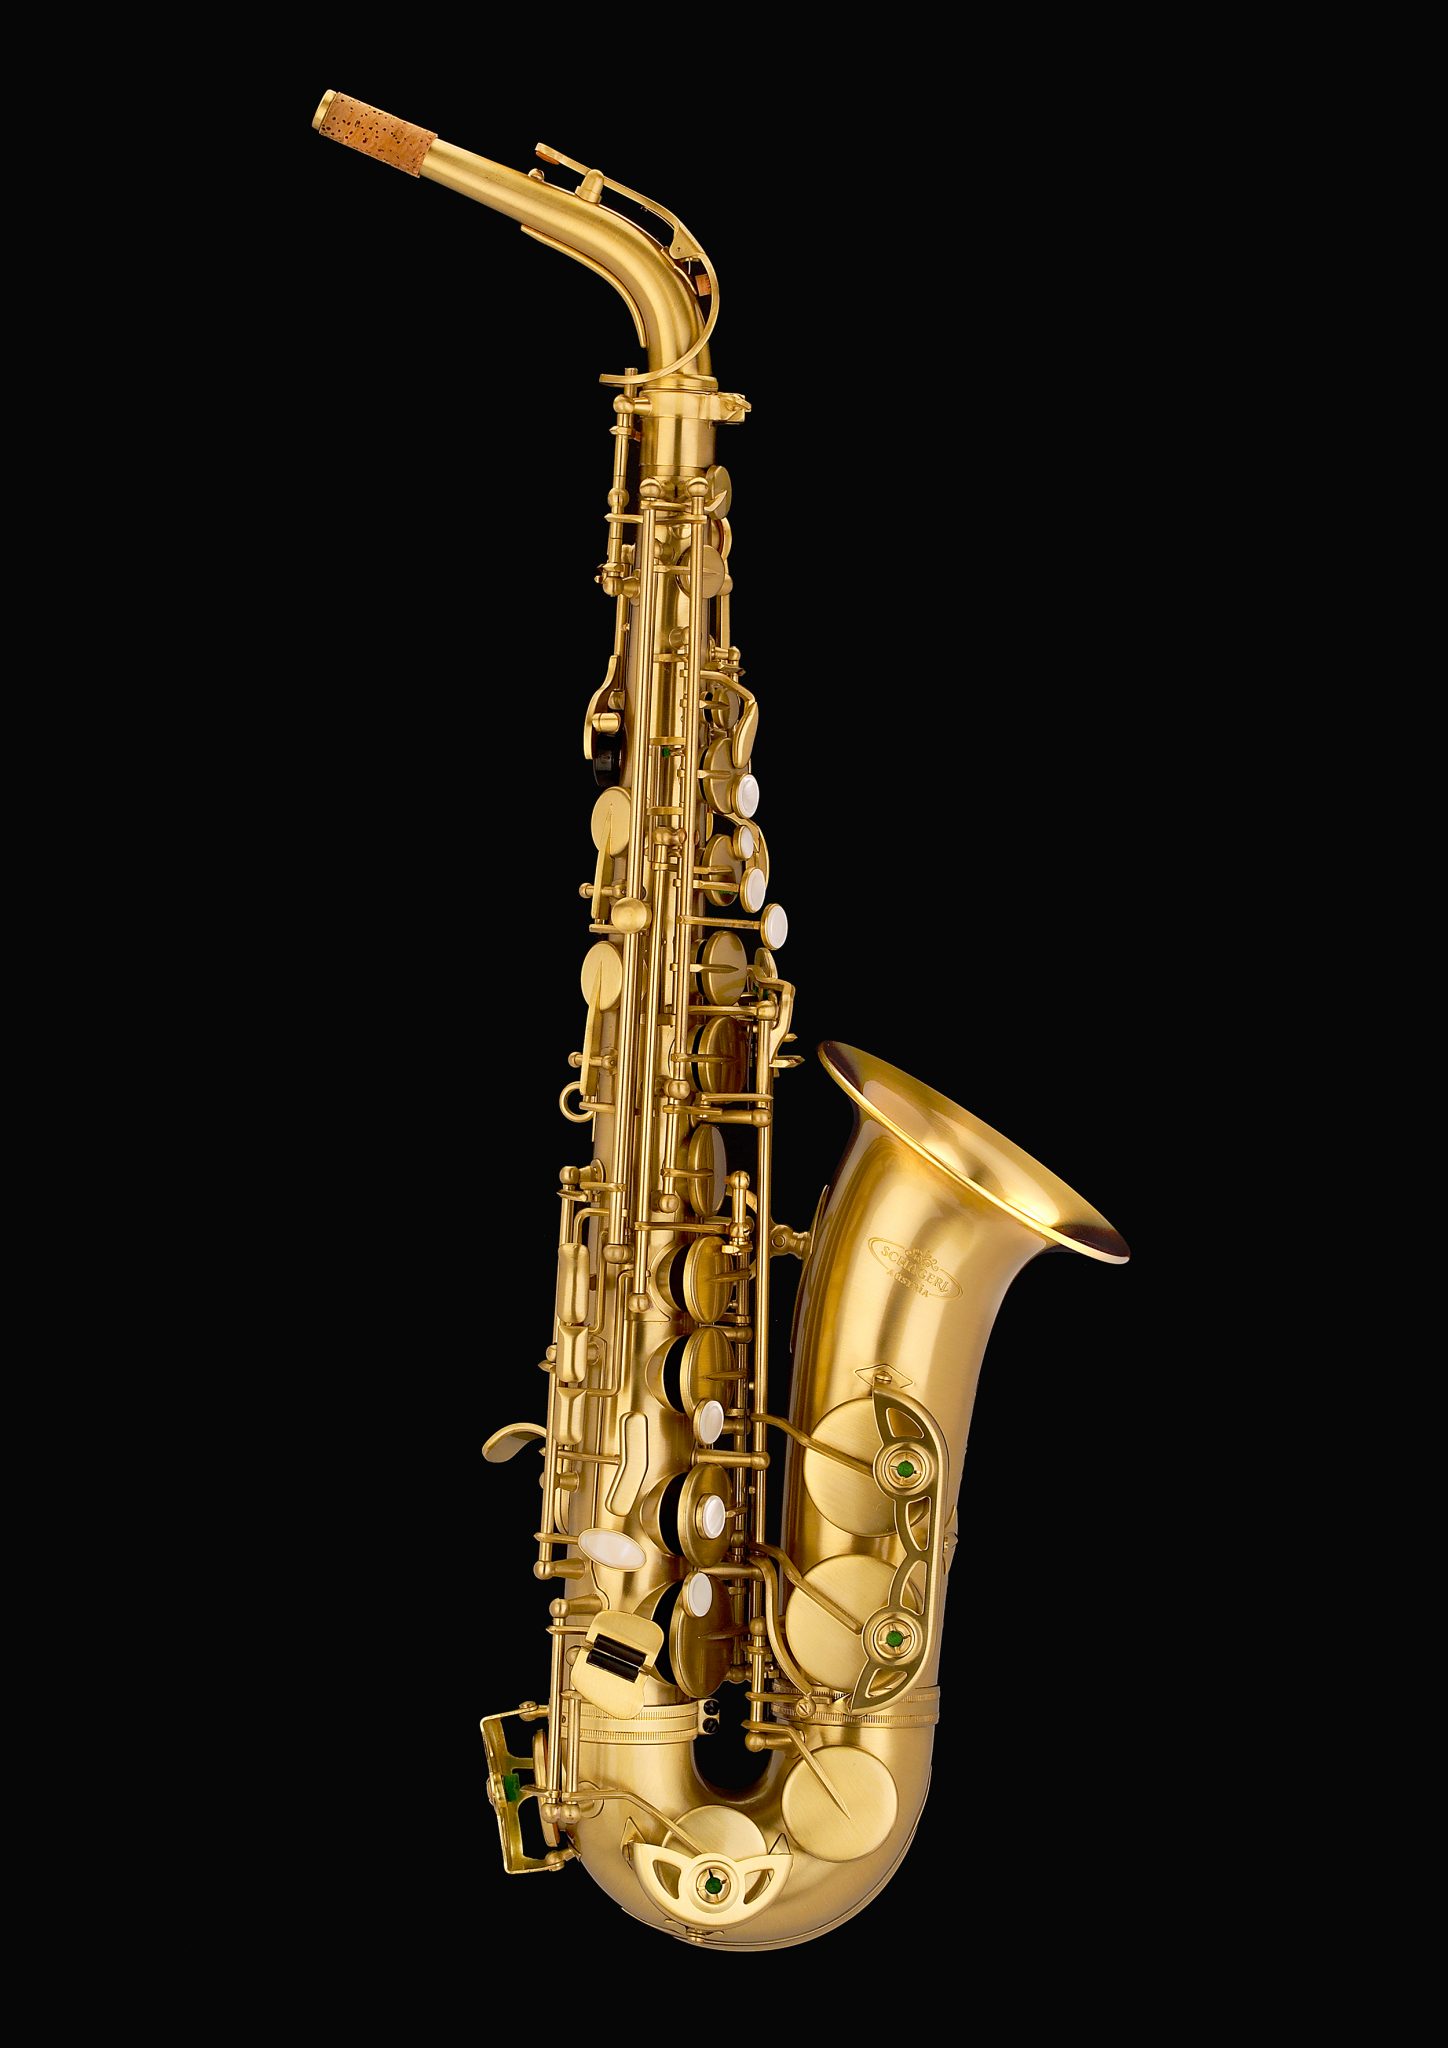 Play saxophone. Техника дыхания для игры на саксофоне.